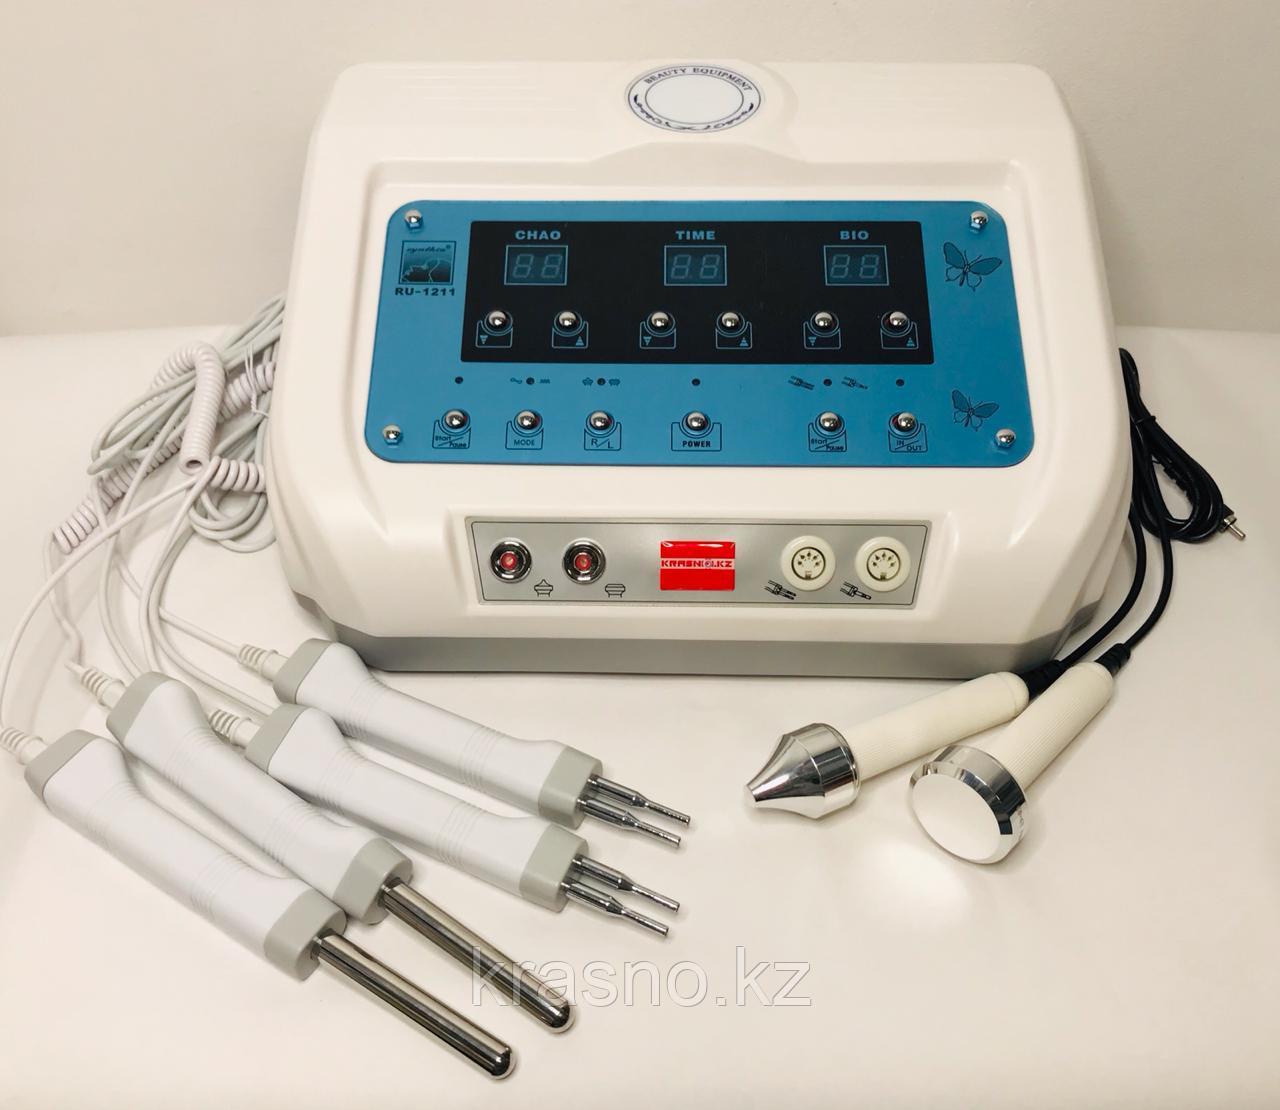 Профессиональный аппарат микротоковой терапии и ультразвук RU-1211, фото 1